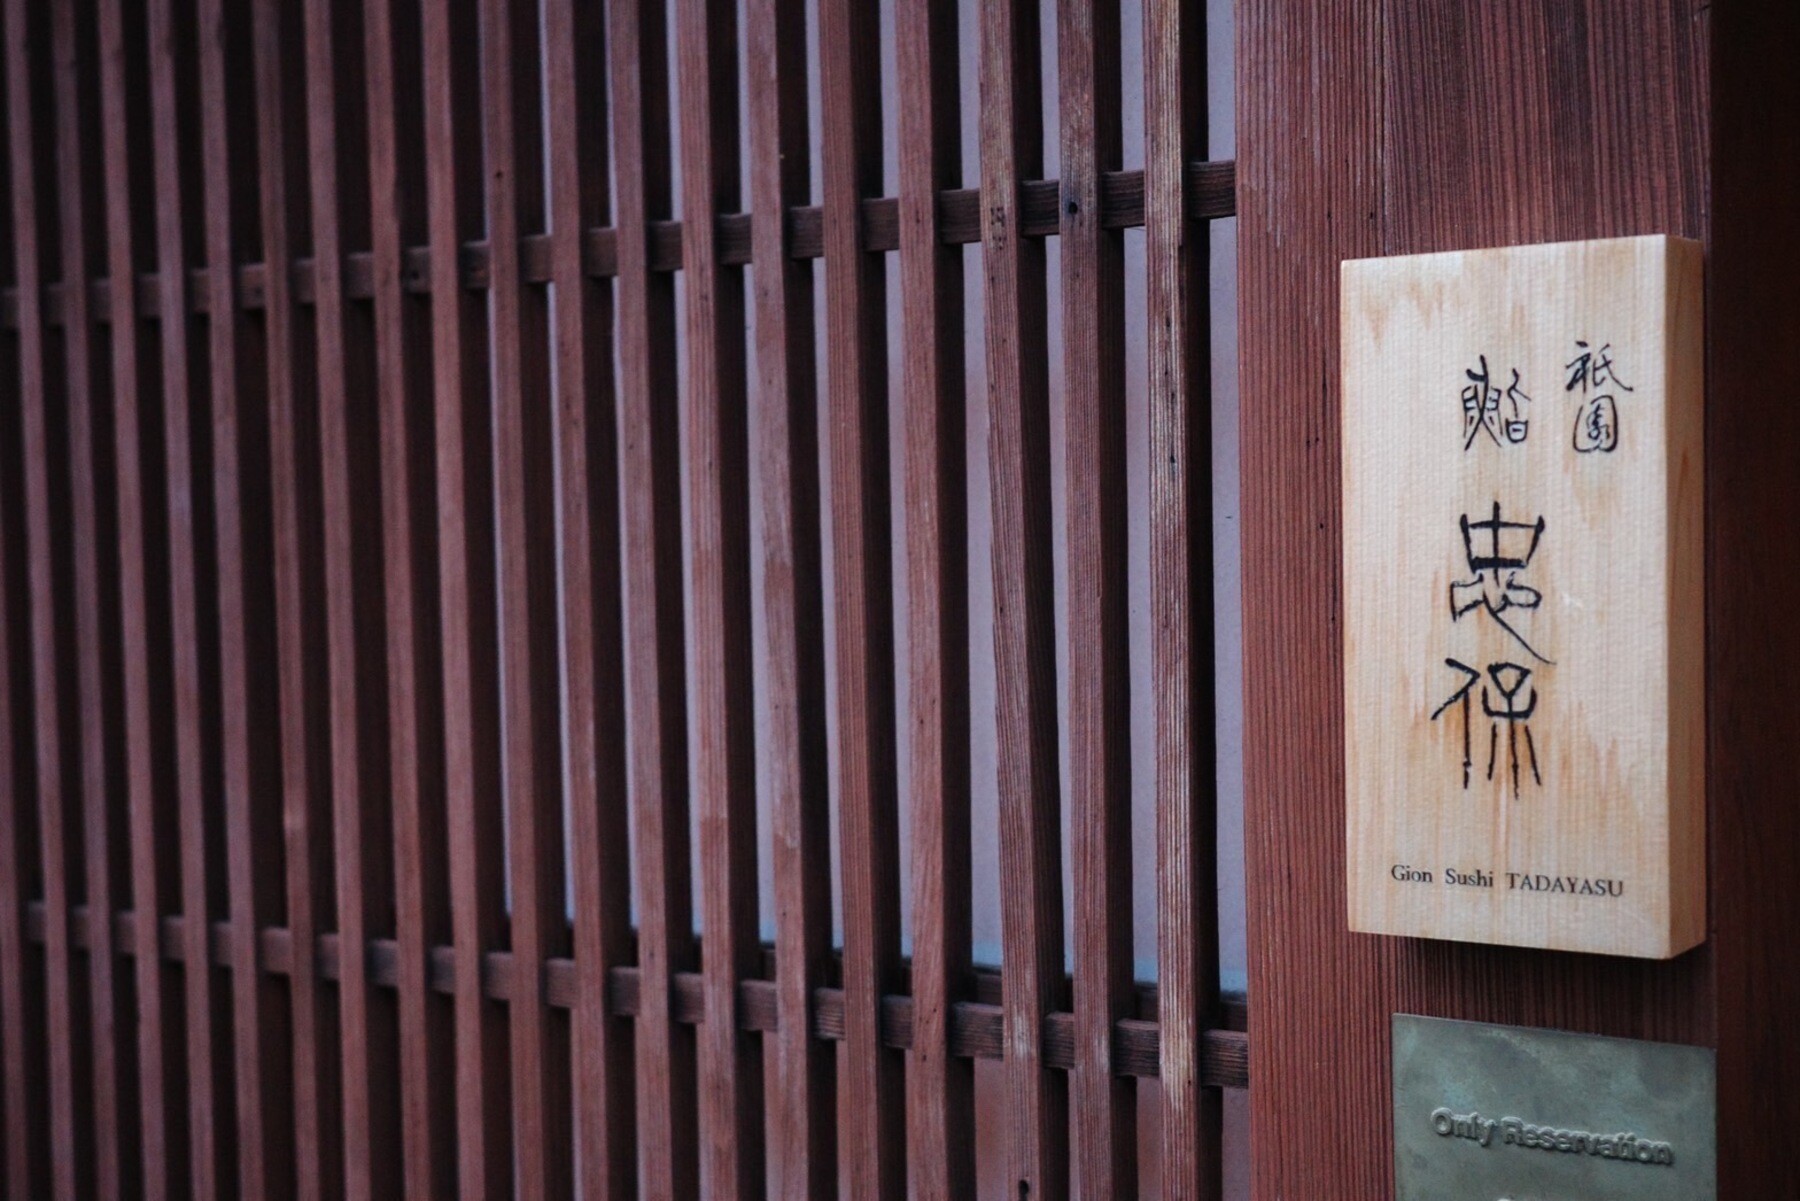 Gion Sushi Tadayasu's image 1